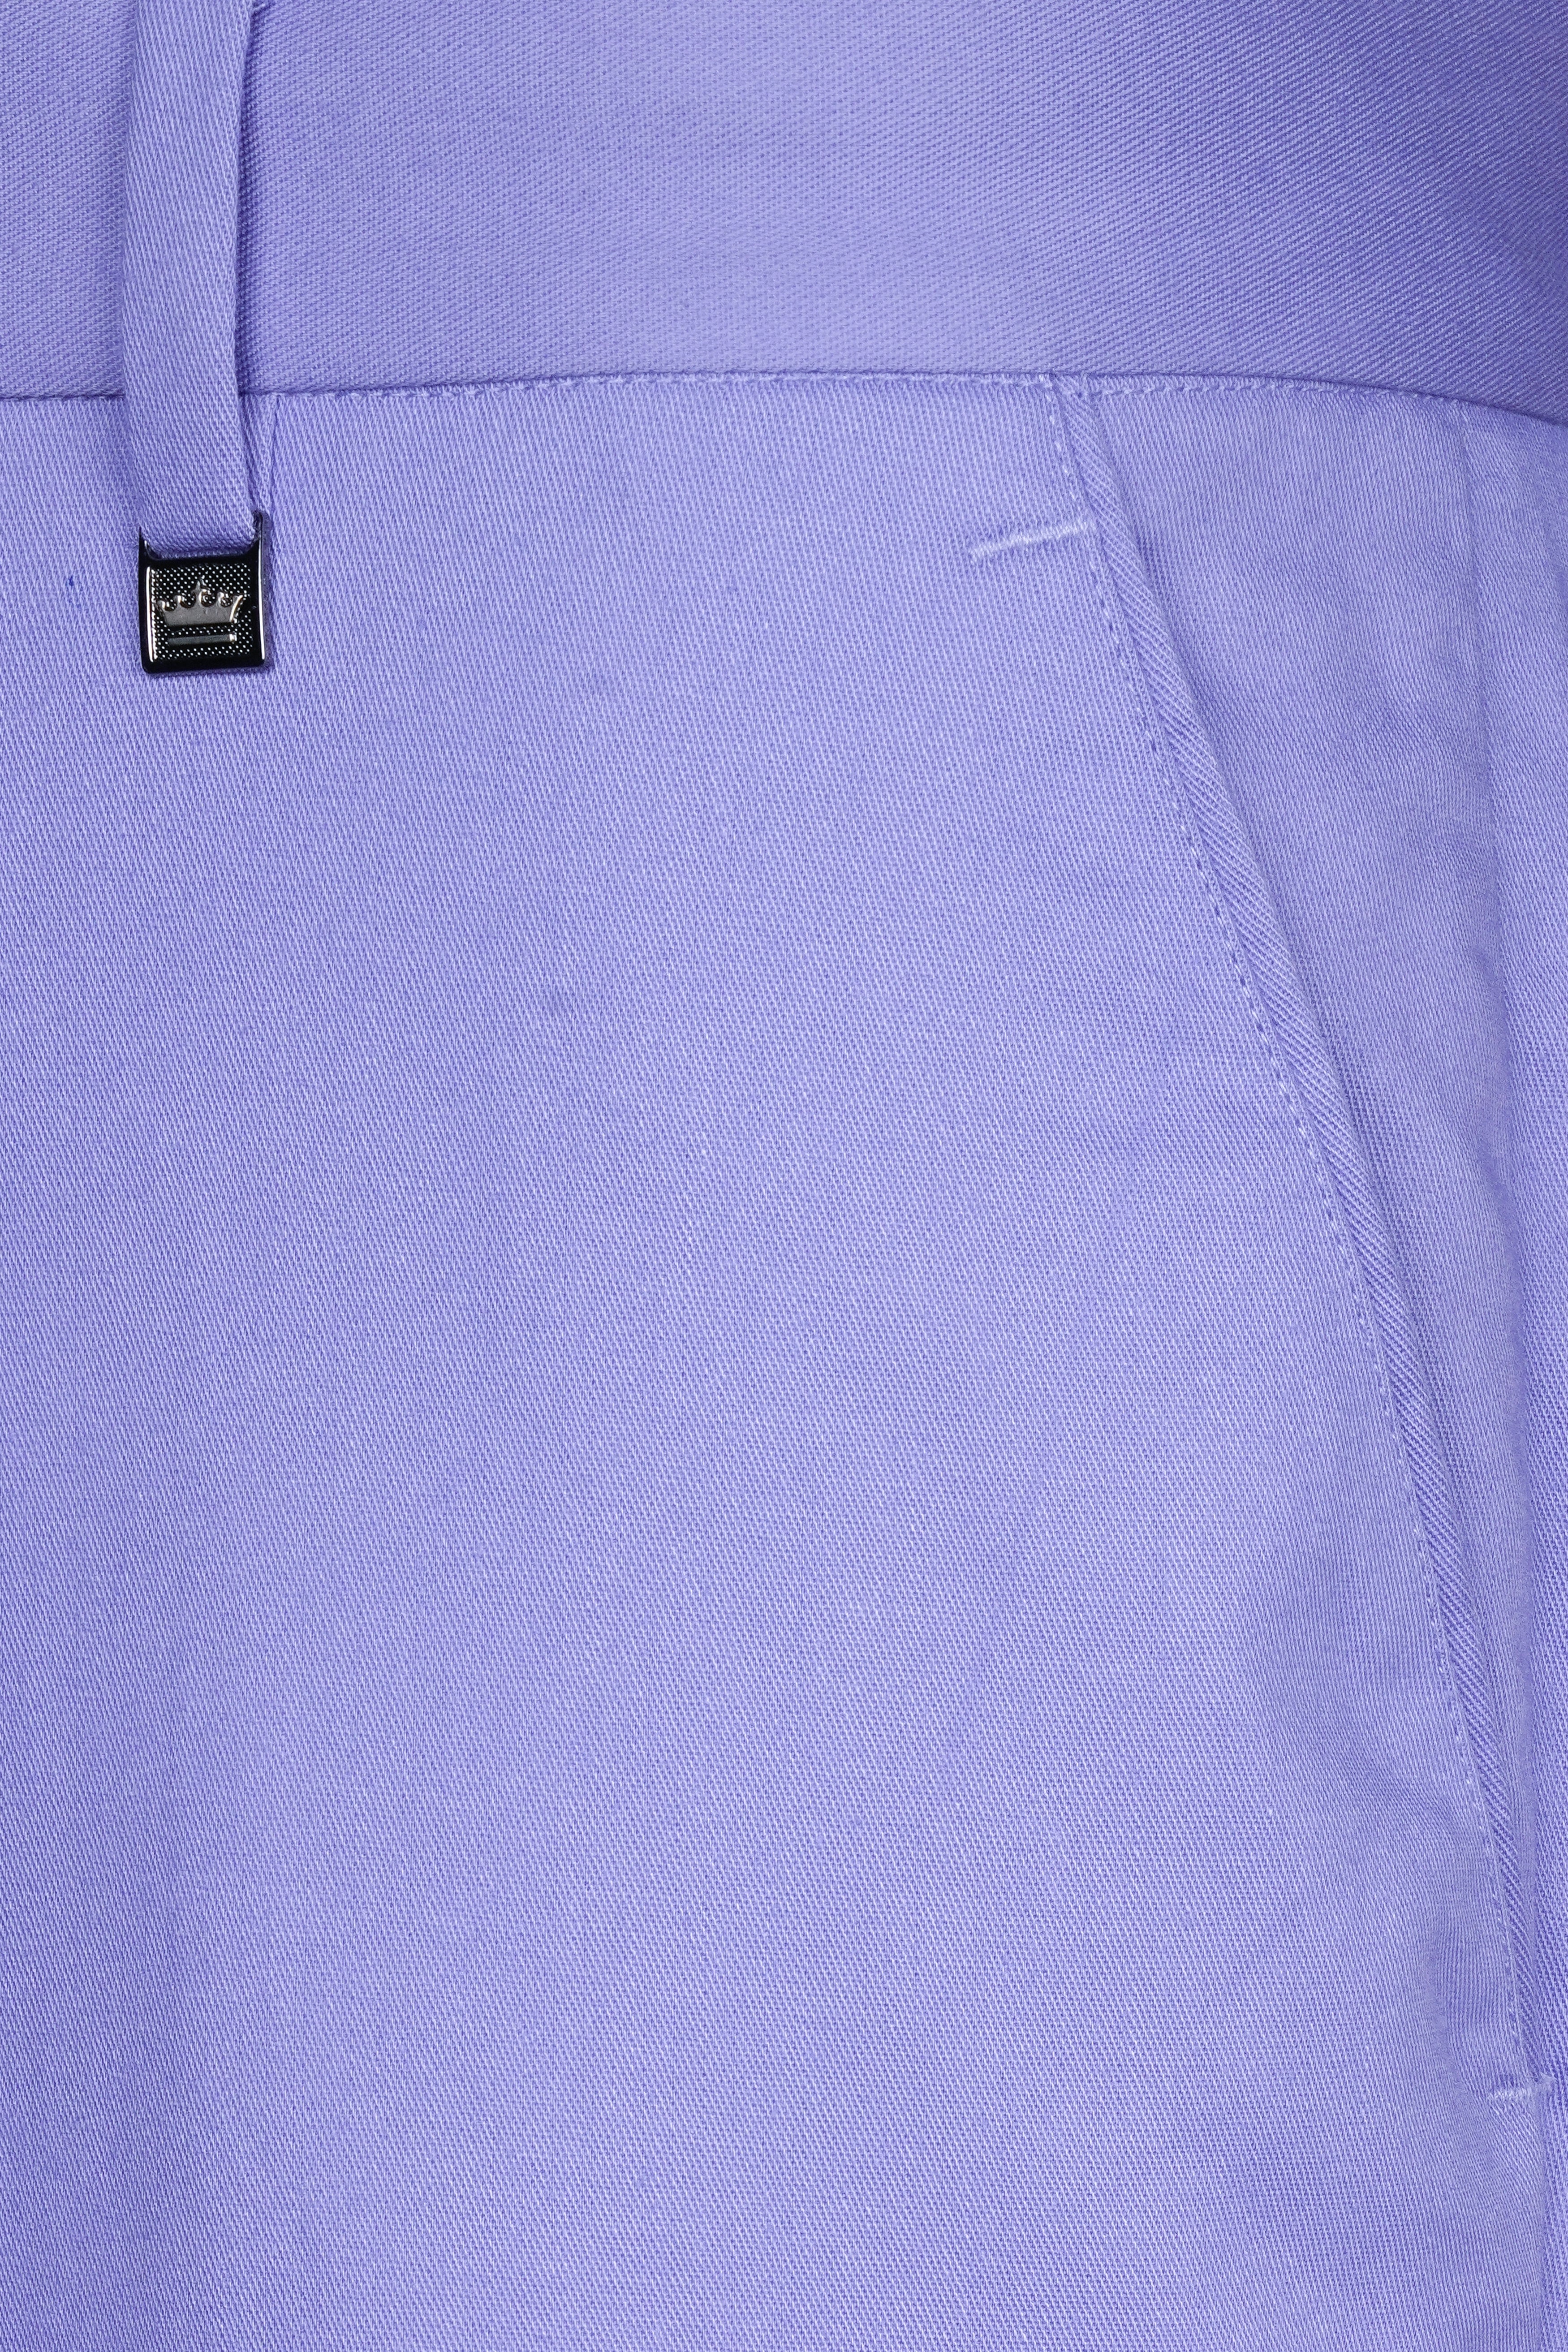 Chetwode Purple Premium Cotton Pant T3049-28, T3049-30, T3049-32, T3049-34, T3049-36, T3049-38, T3049-40, T3049-42, T3049-44